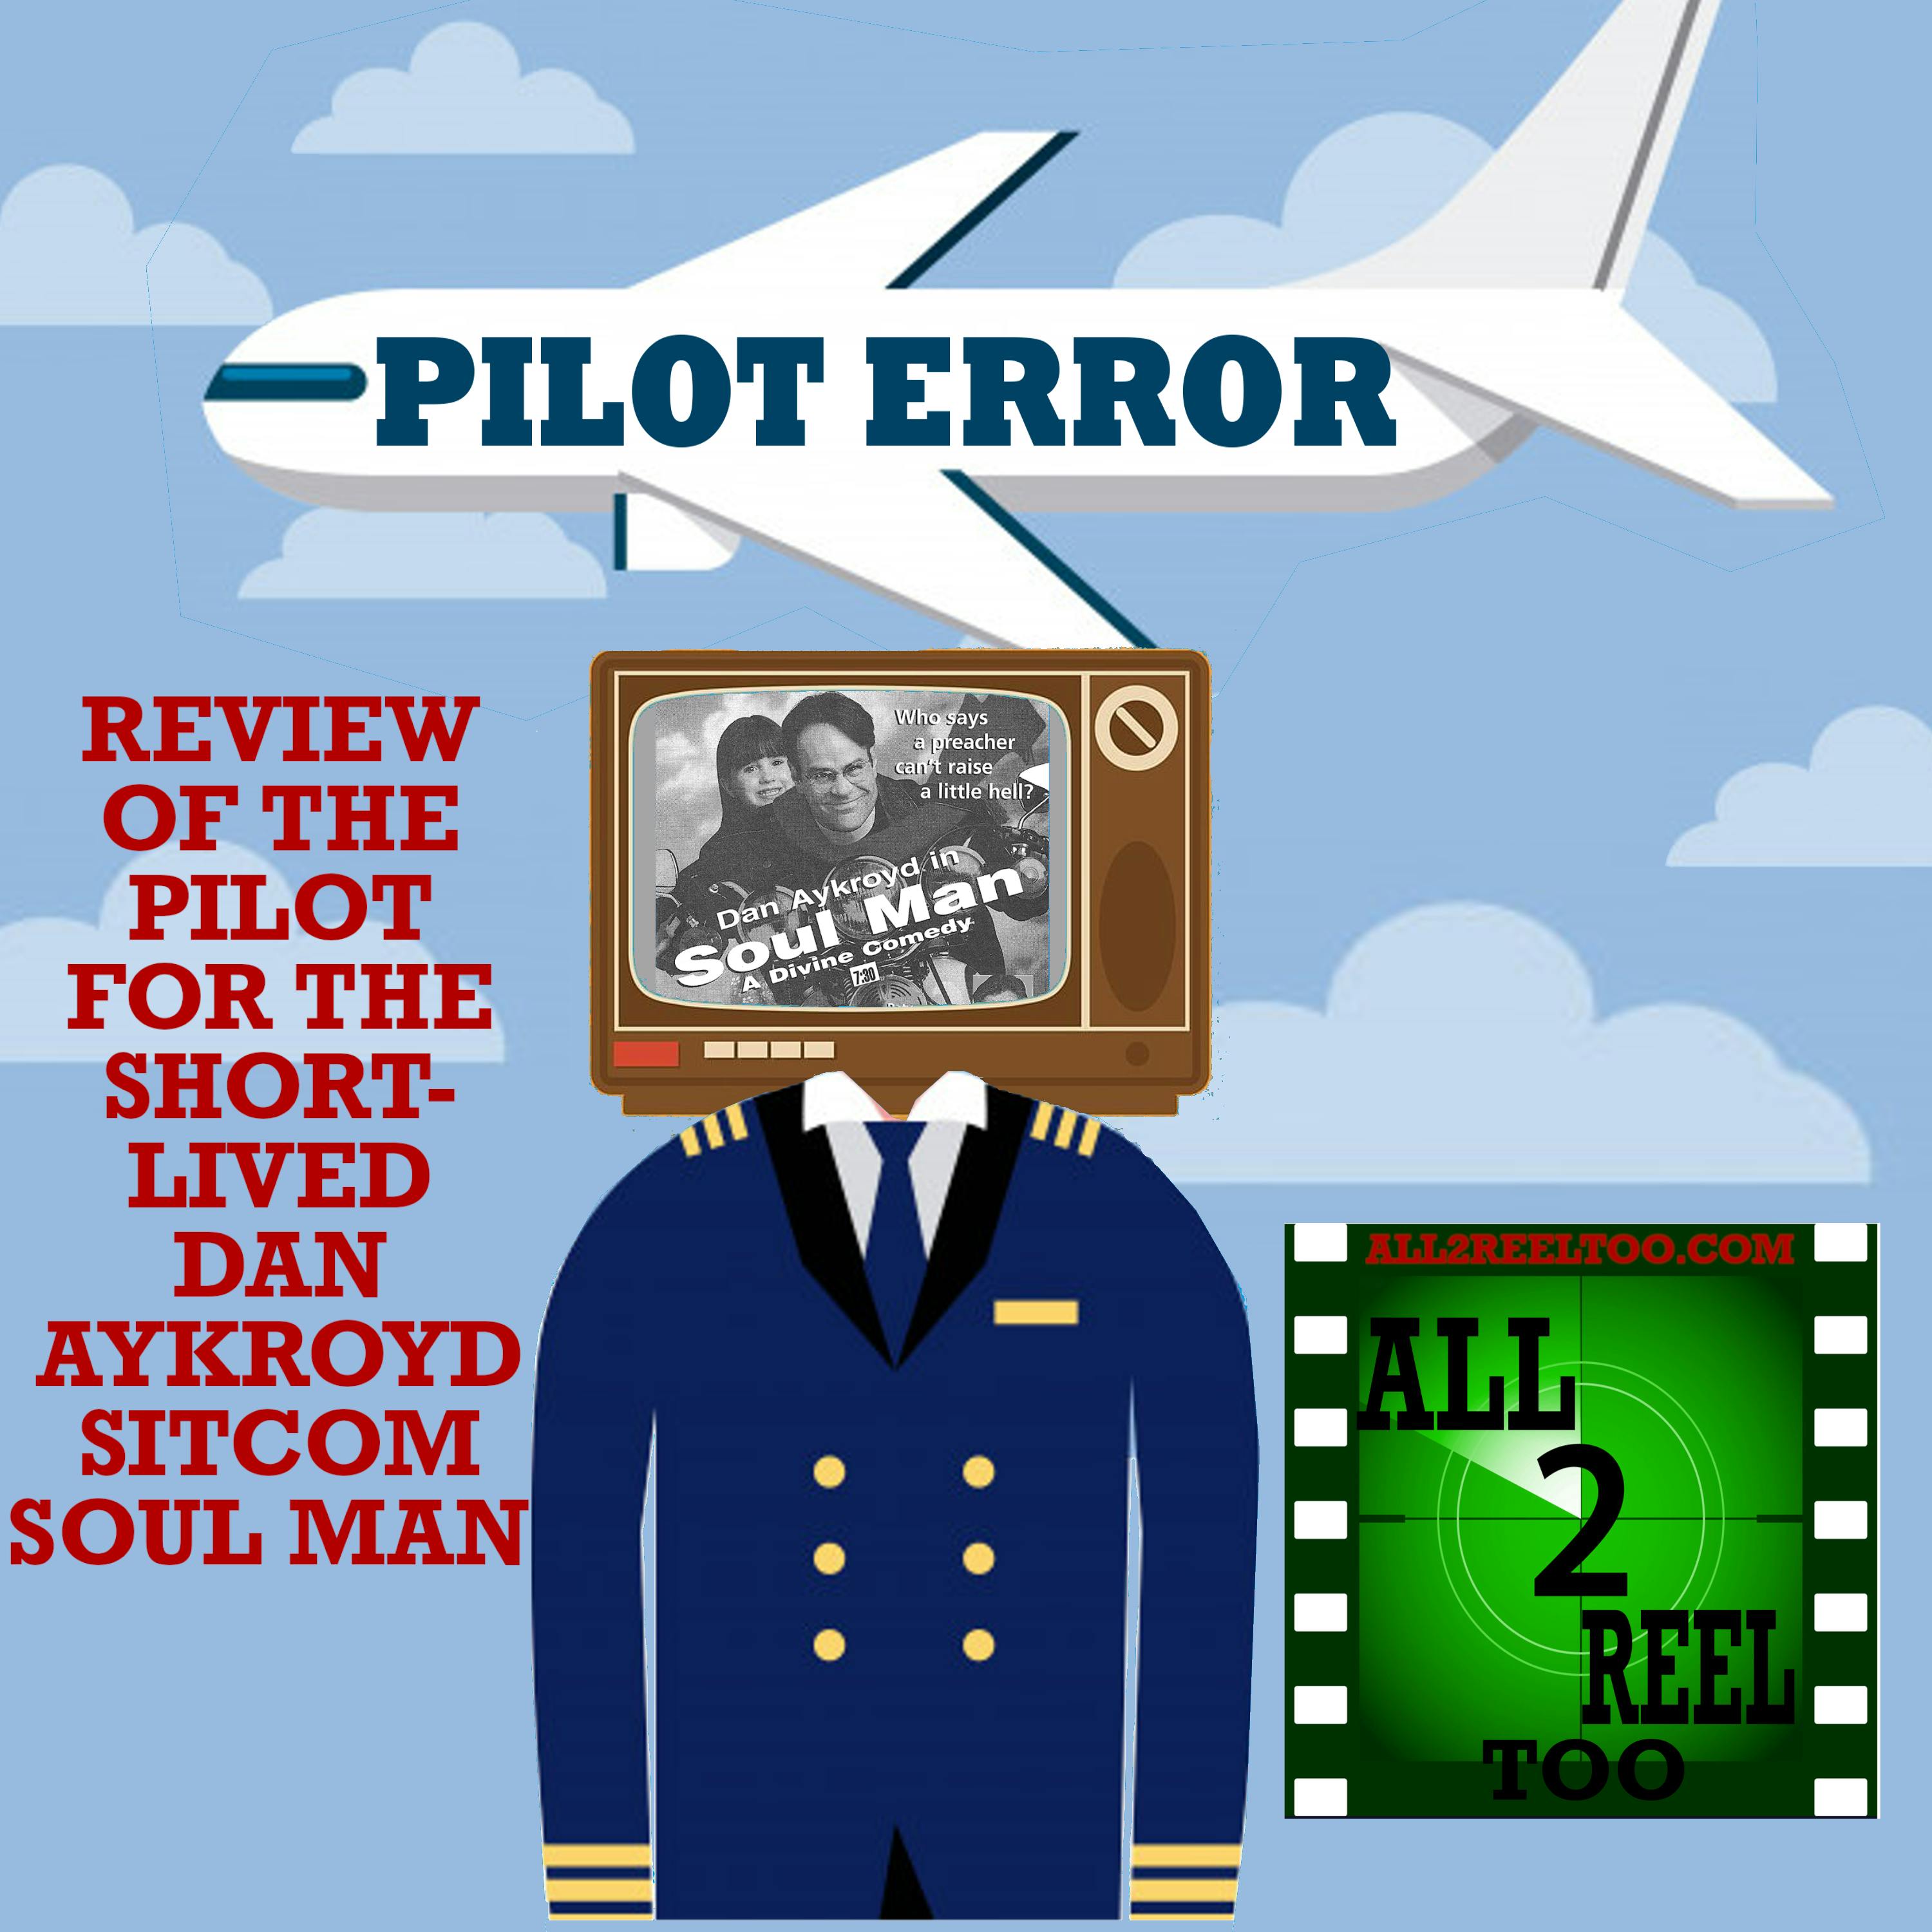 Soul Man (1997) - PILOT ERROR REVIEW Image